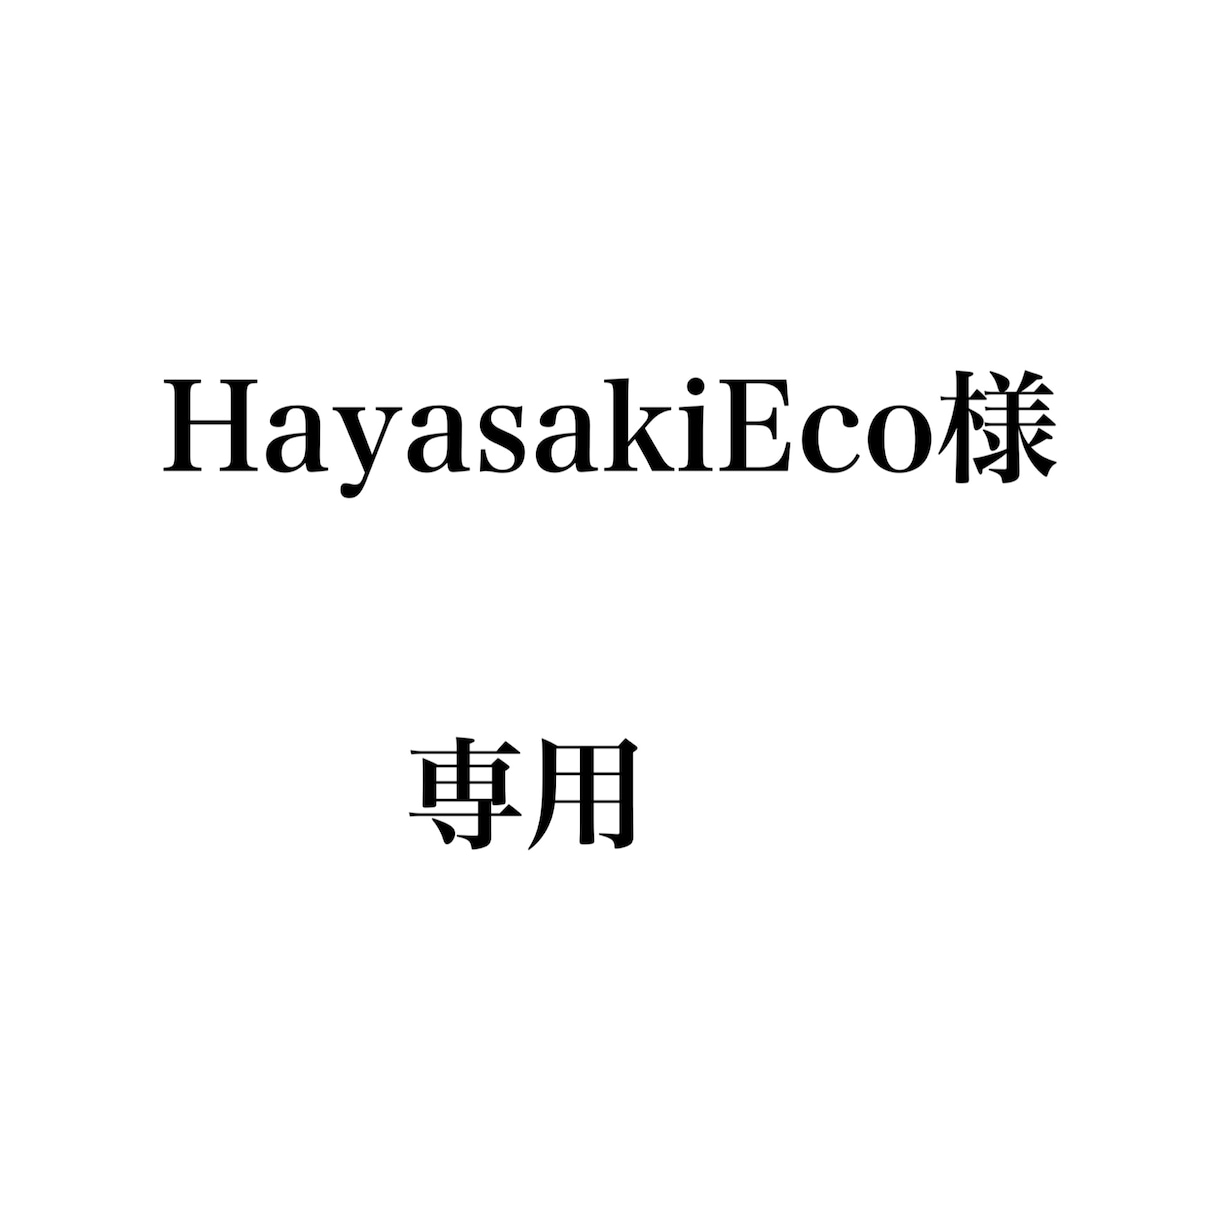 Hayasaki Eco様専用でございます 修正させていただいた画像となります。よろしくお願いします！ イメージ1